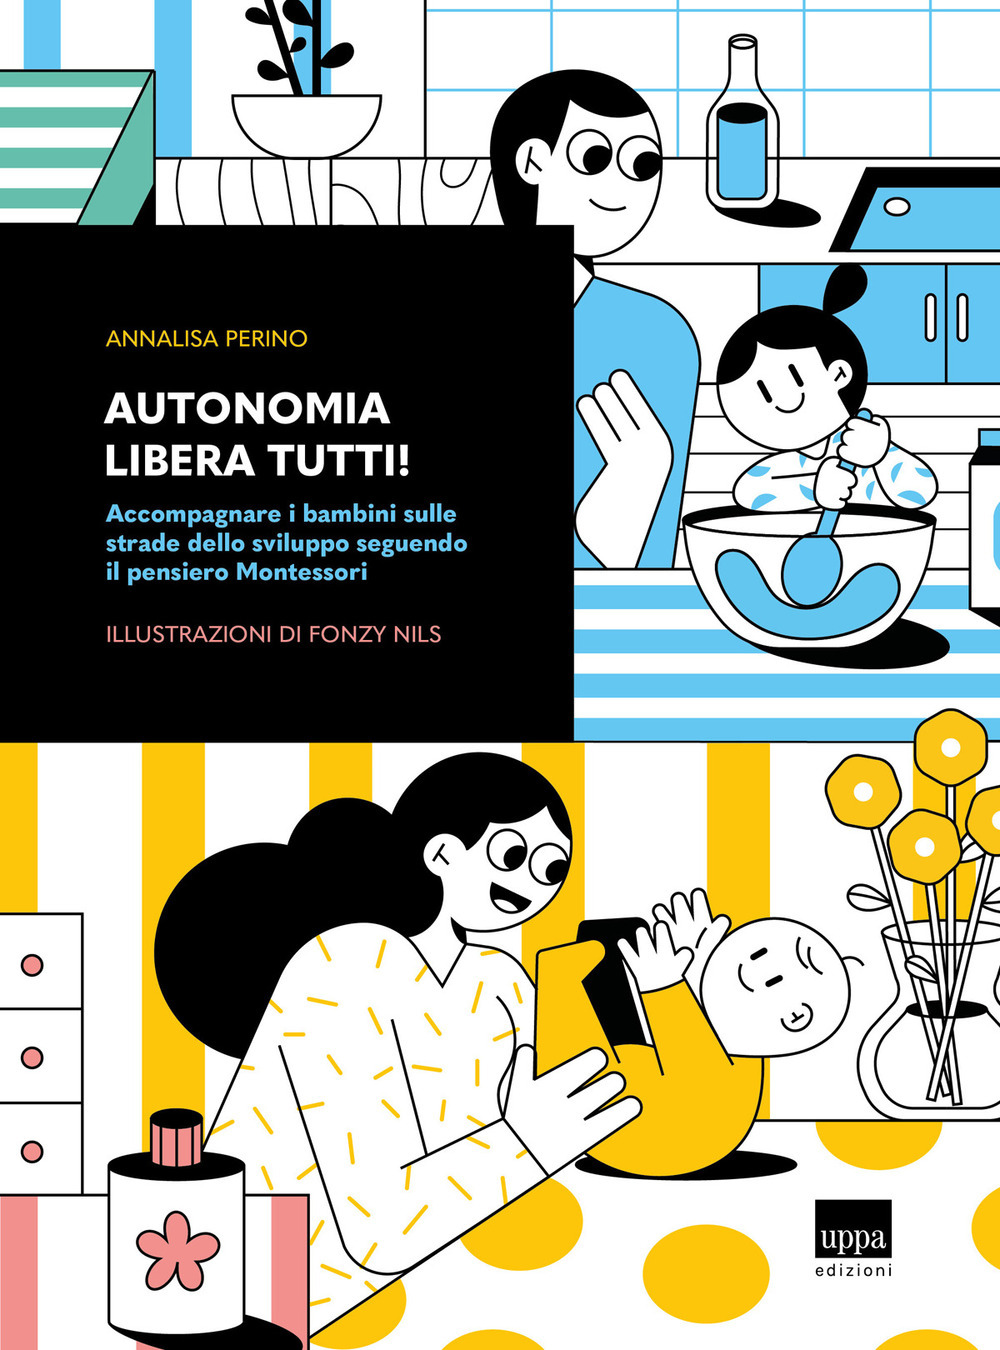 Libri Annalisa Perino - Autonomia Libera Tutti! Accompagnare I Bambini Sulle Strade Dello Sviluppo Seguendo Il Pensiero Montessori NUOVO SIGILLATO, EDIZIONE DEL 10/12/2021 SUBITO DISPONIBILE